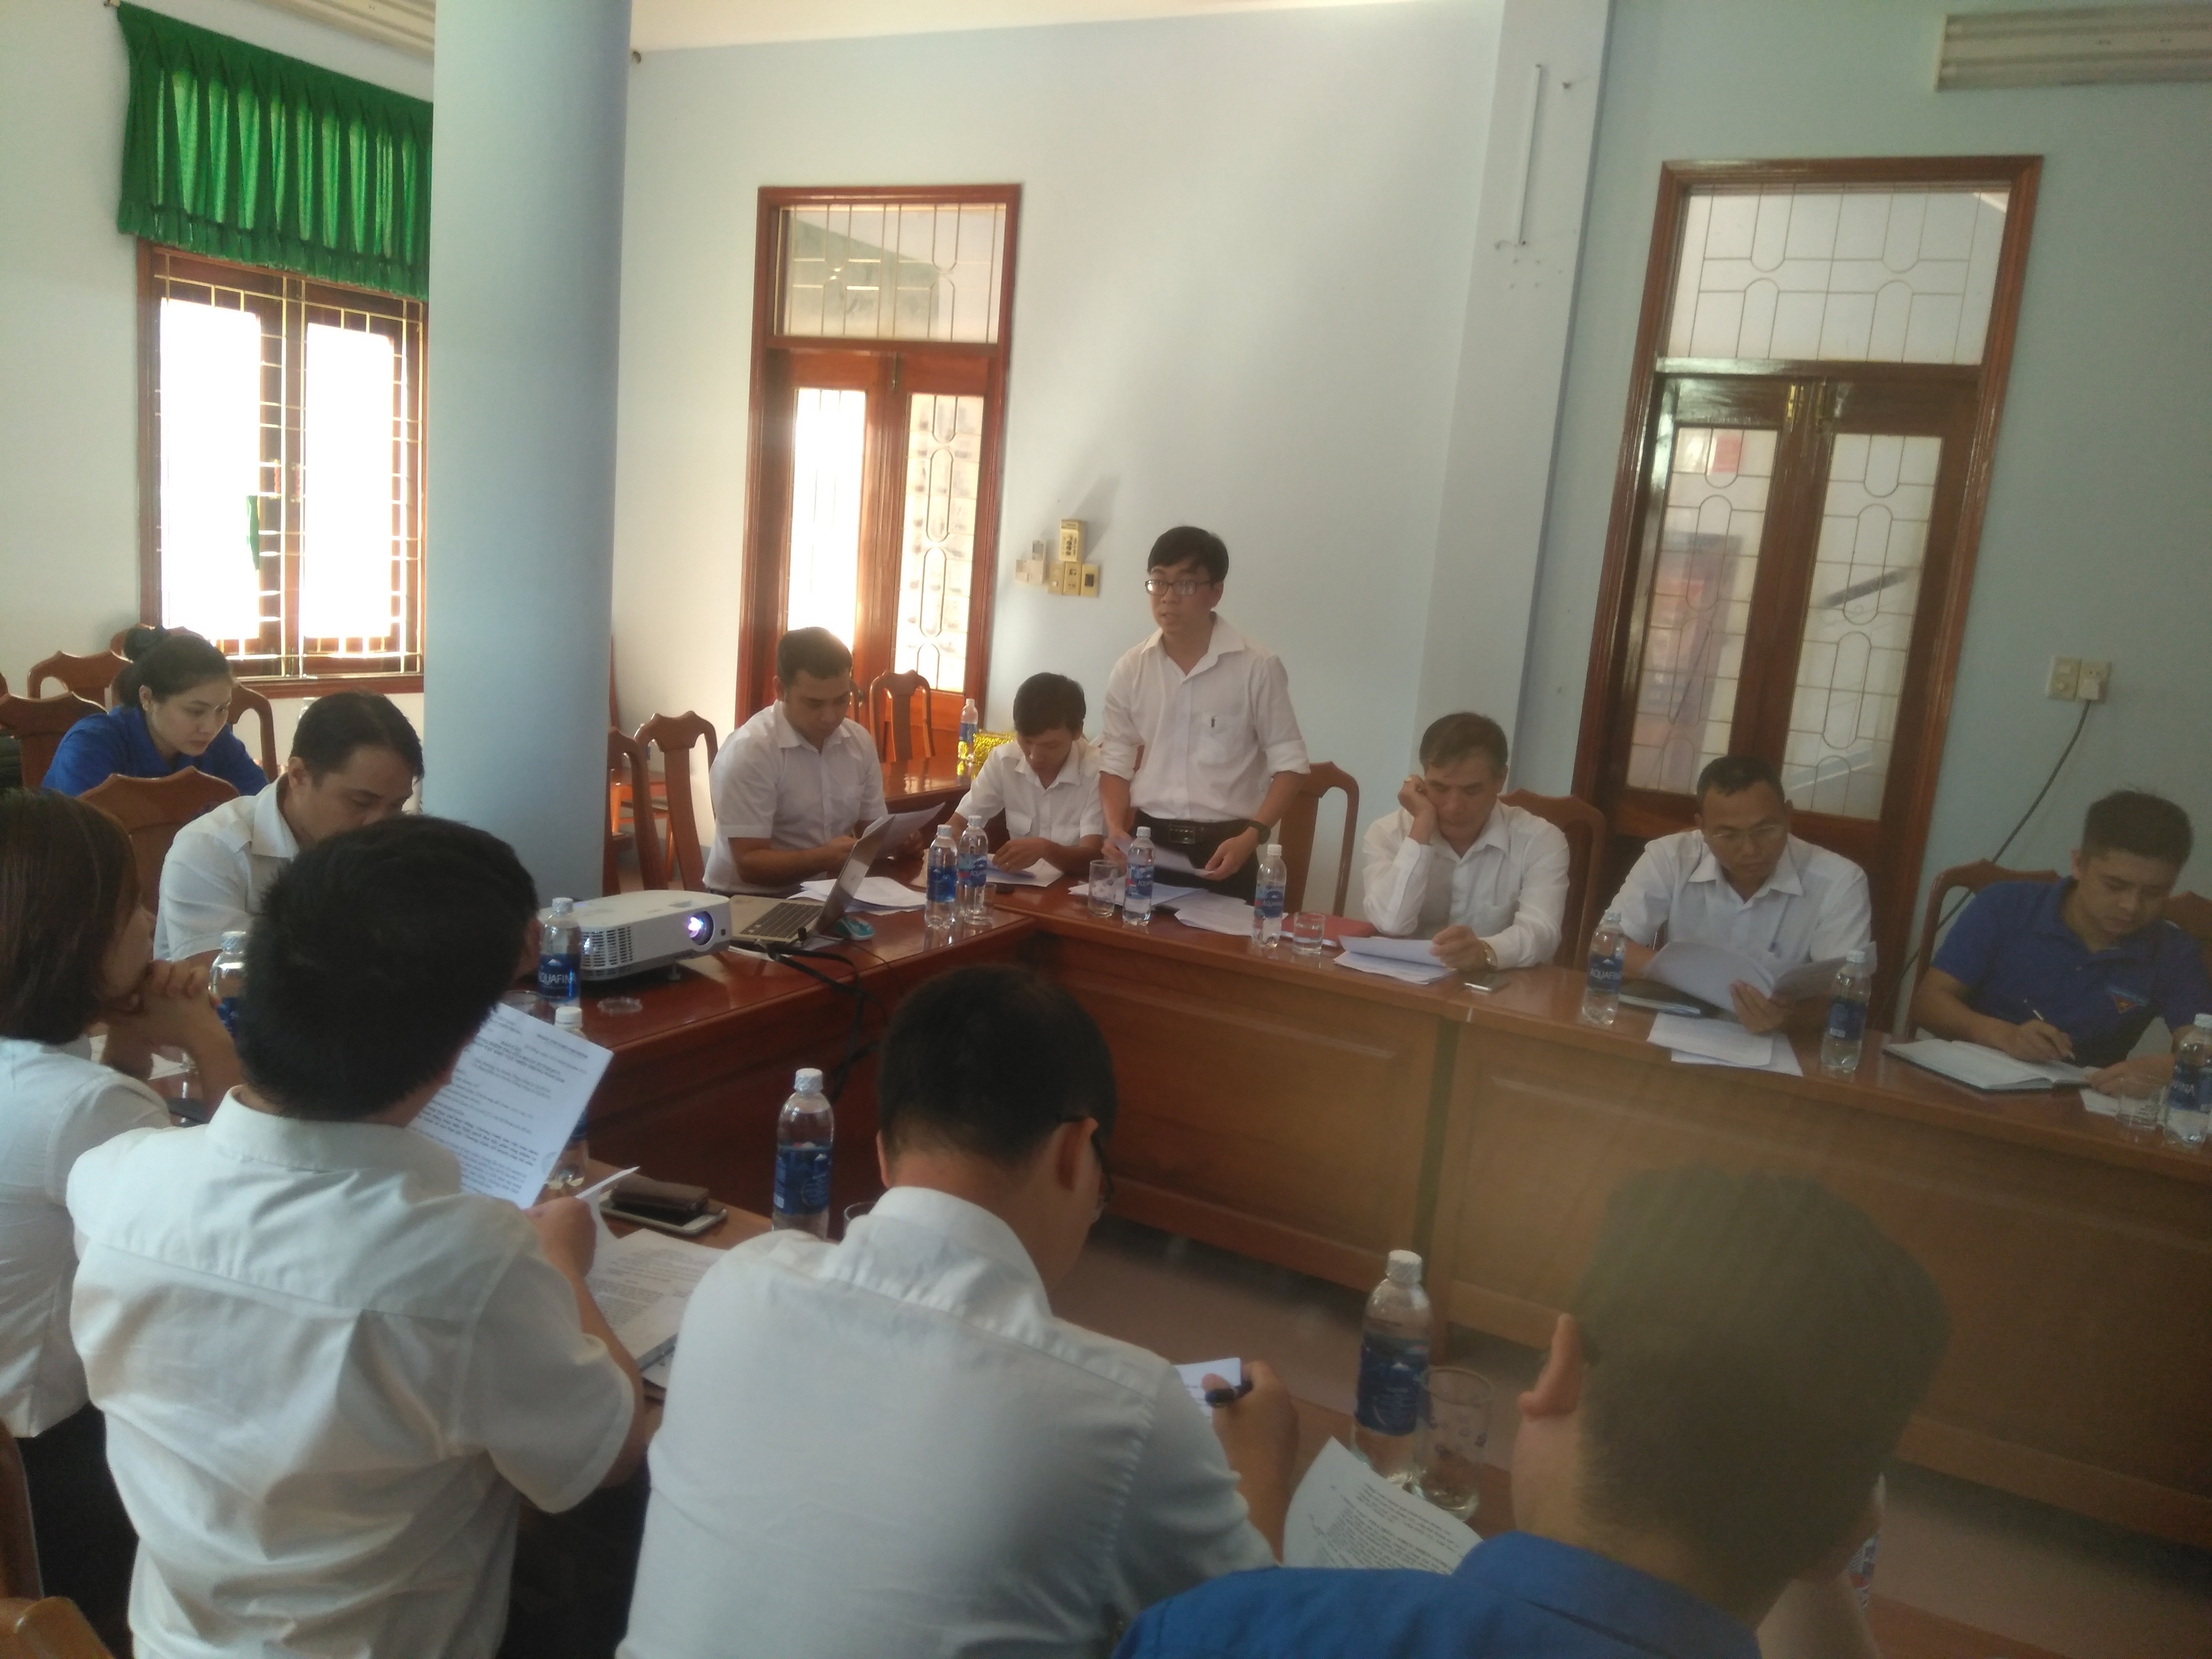 Chương trình kiểm tra công tác Đoàn của Đoàn Thanh niên Tổng công ty tại chi đoàn Quy Nhơn - Phù Cát thuộc đoàn cơ sở Công ty Quản lý bay miền Trung